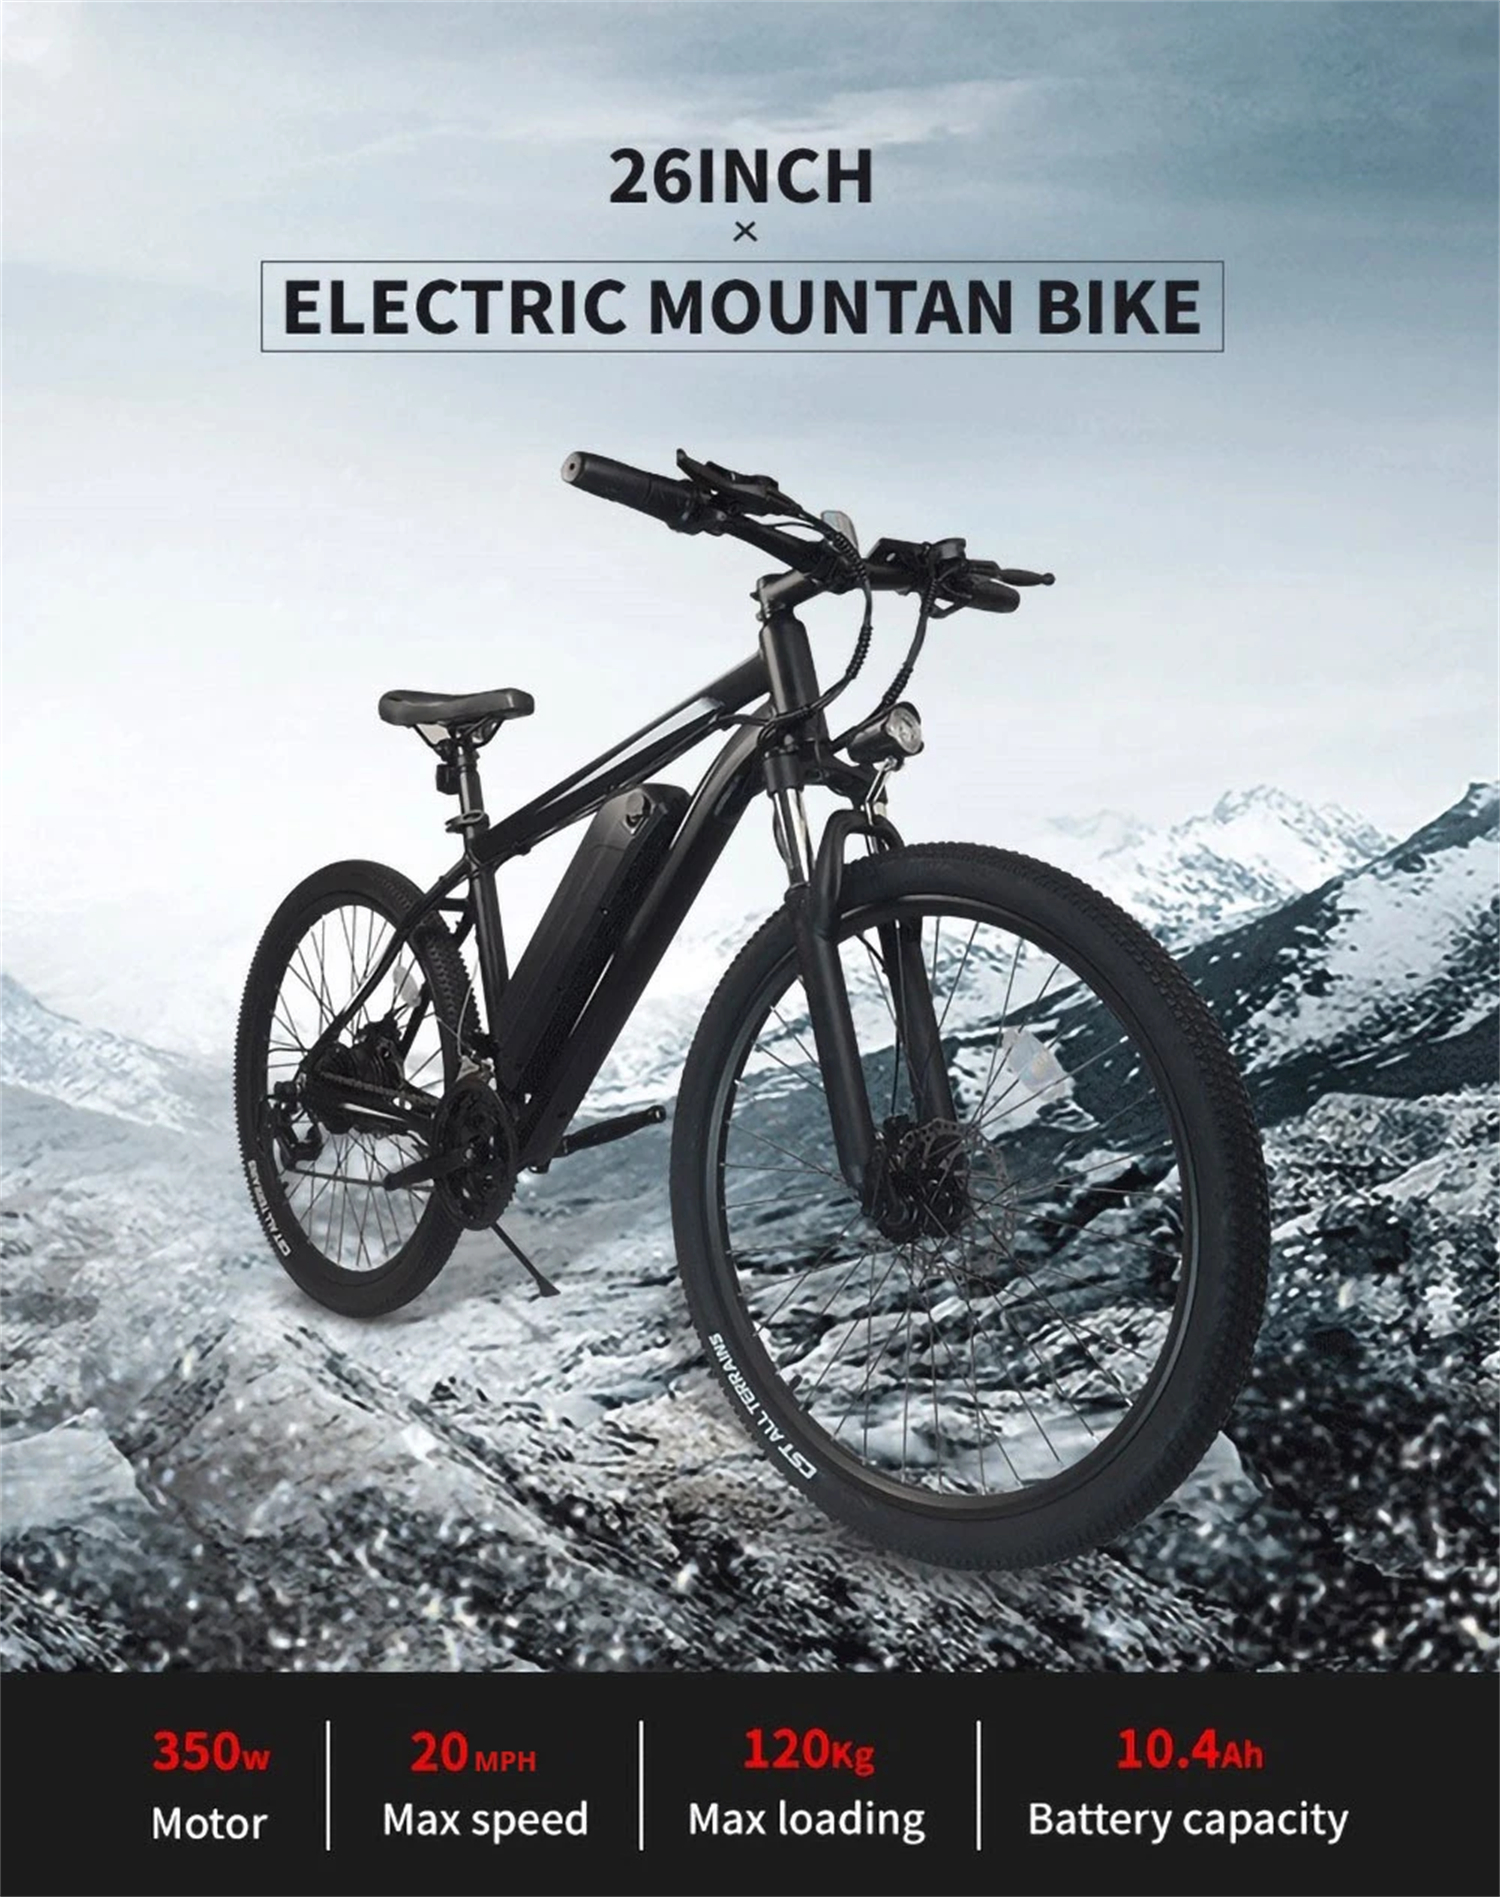 K3 električni bicikl 26*1,95 inča guma, 350 W motor 20 MPH maks. brzina, dvostruka 36 V 10.4 Ah baterija, 120 kg opterećenja